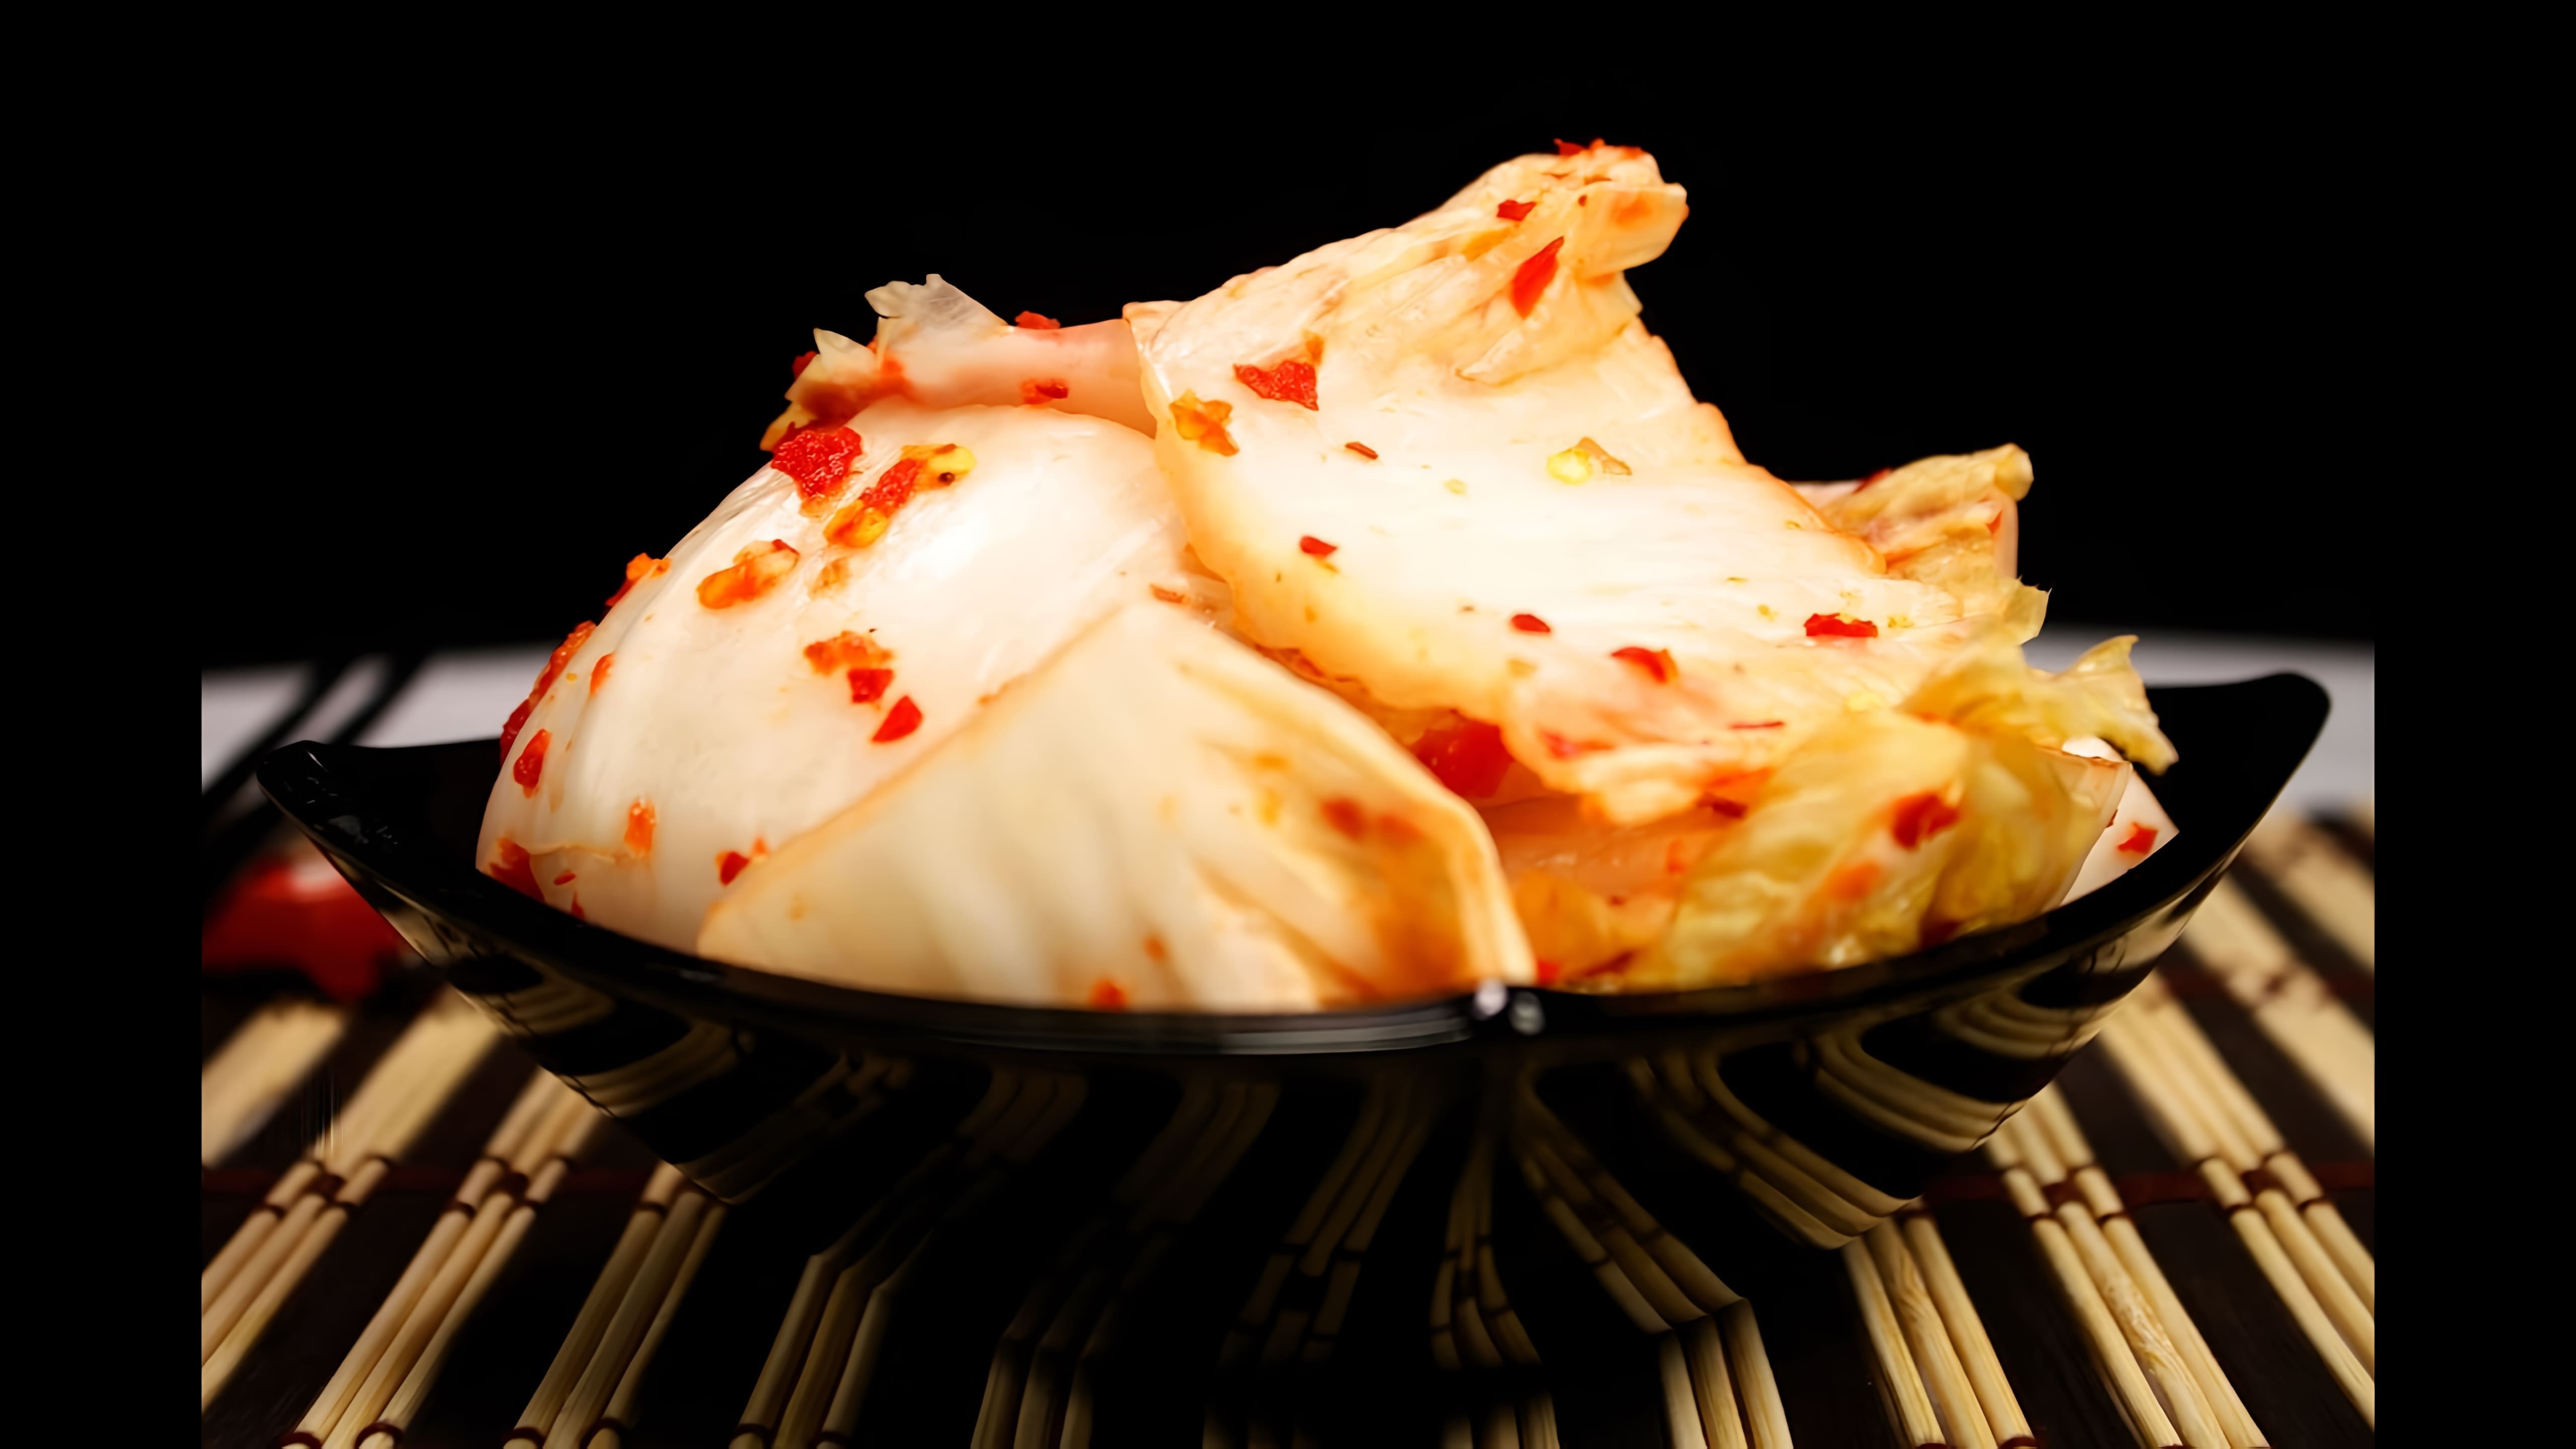 Кимчи по-корейски (Чимчи) - это традиционное корейское блюдо, которое готовится из пекинской капусты, дайкона, моркови, красного перца и других ингредиентов